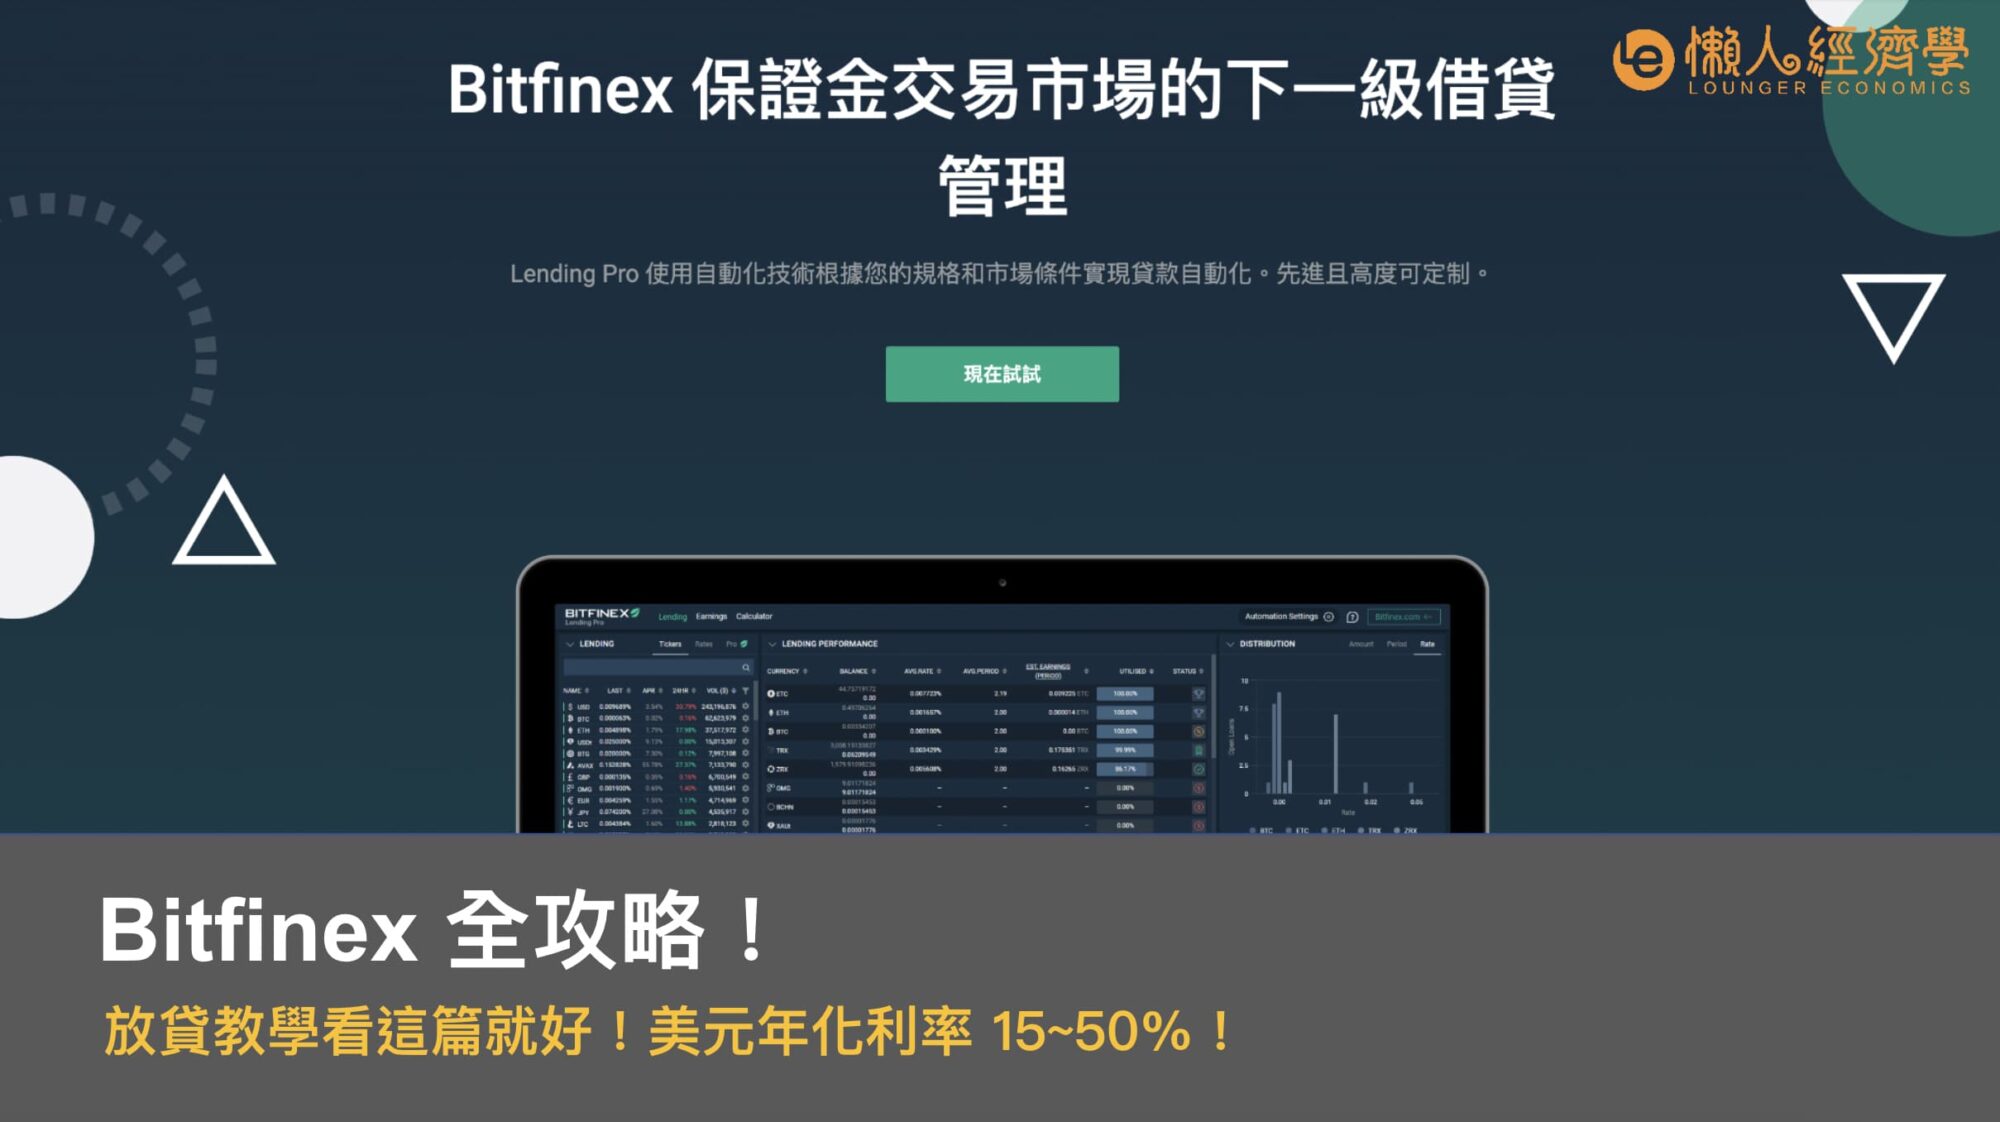 Bitfinex 放貸教學：美元年化利率15～50%，Lending pro 放貸借貸操作指南